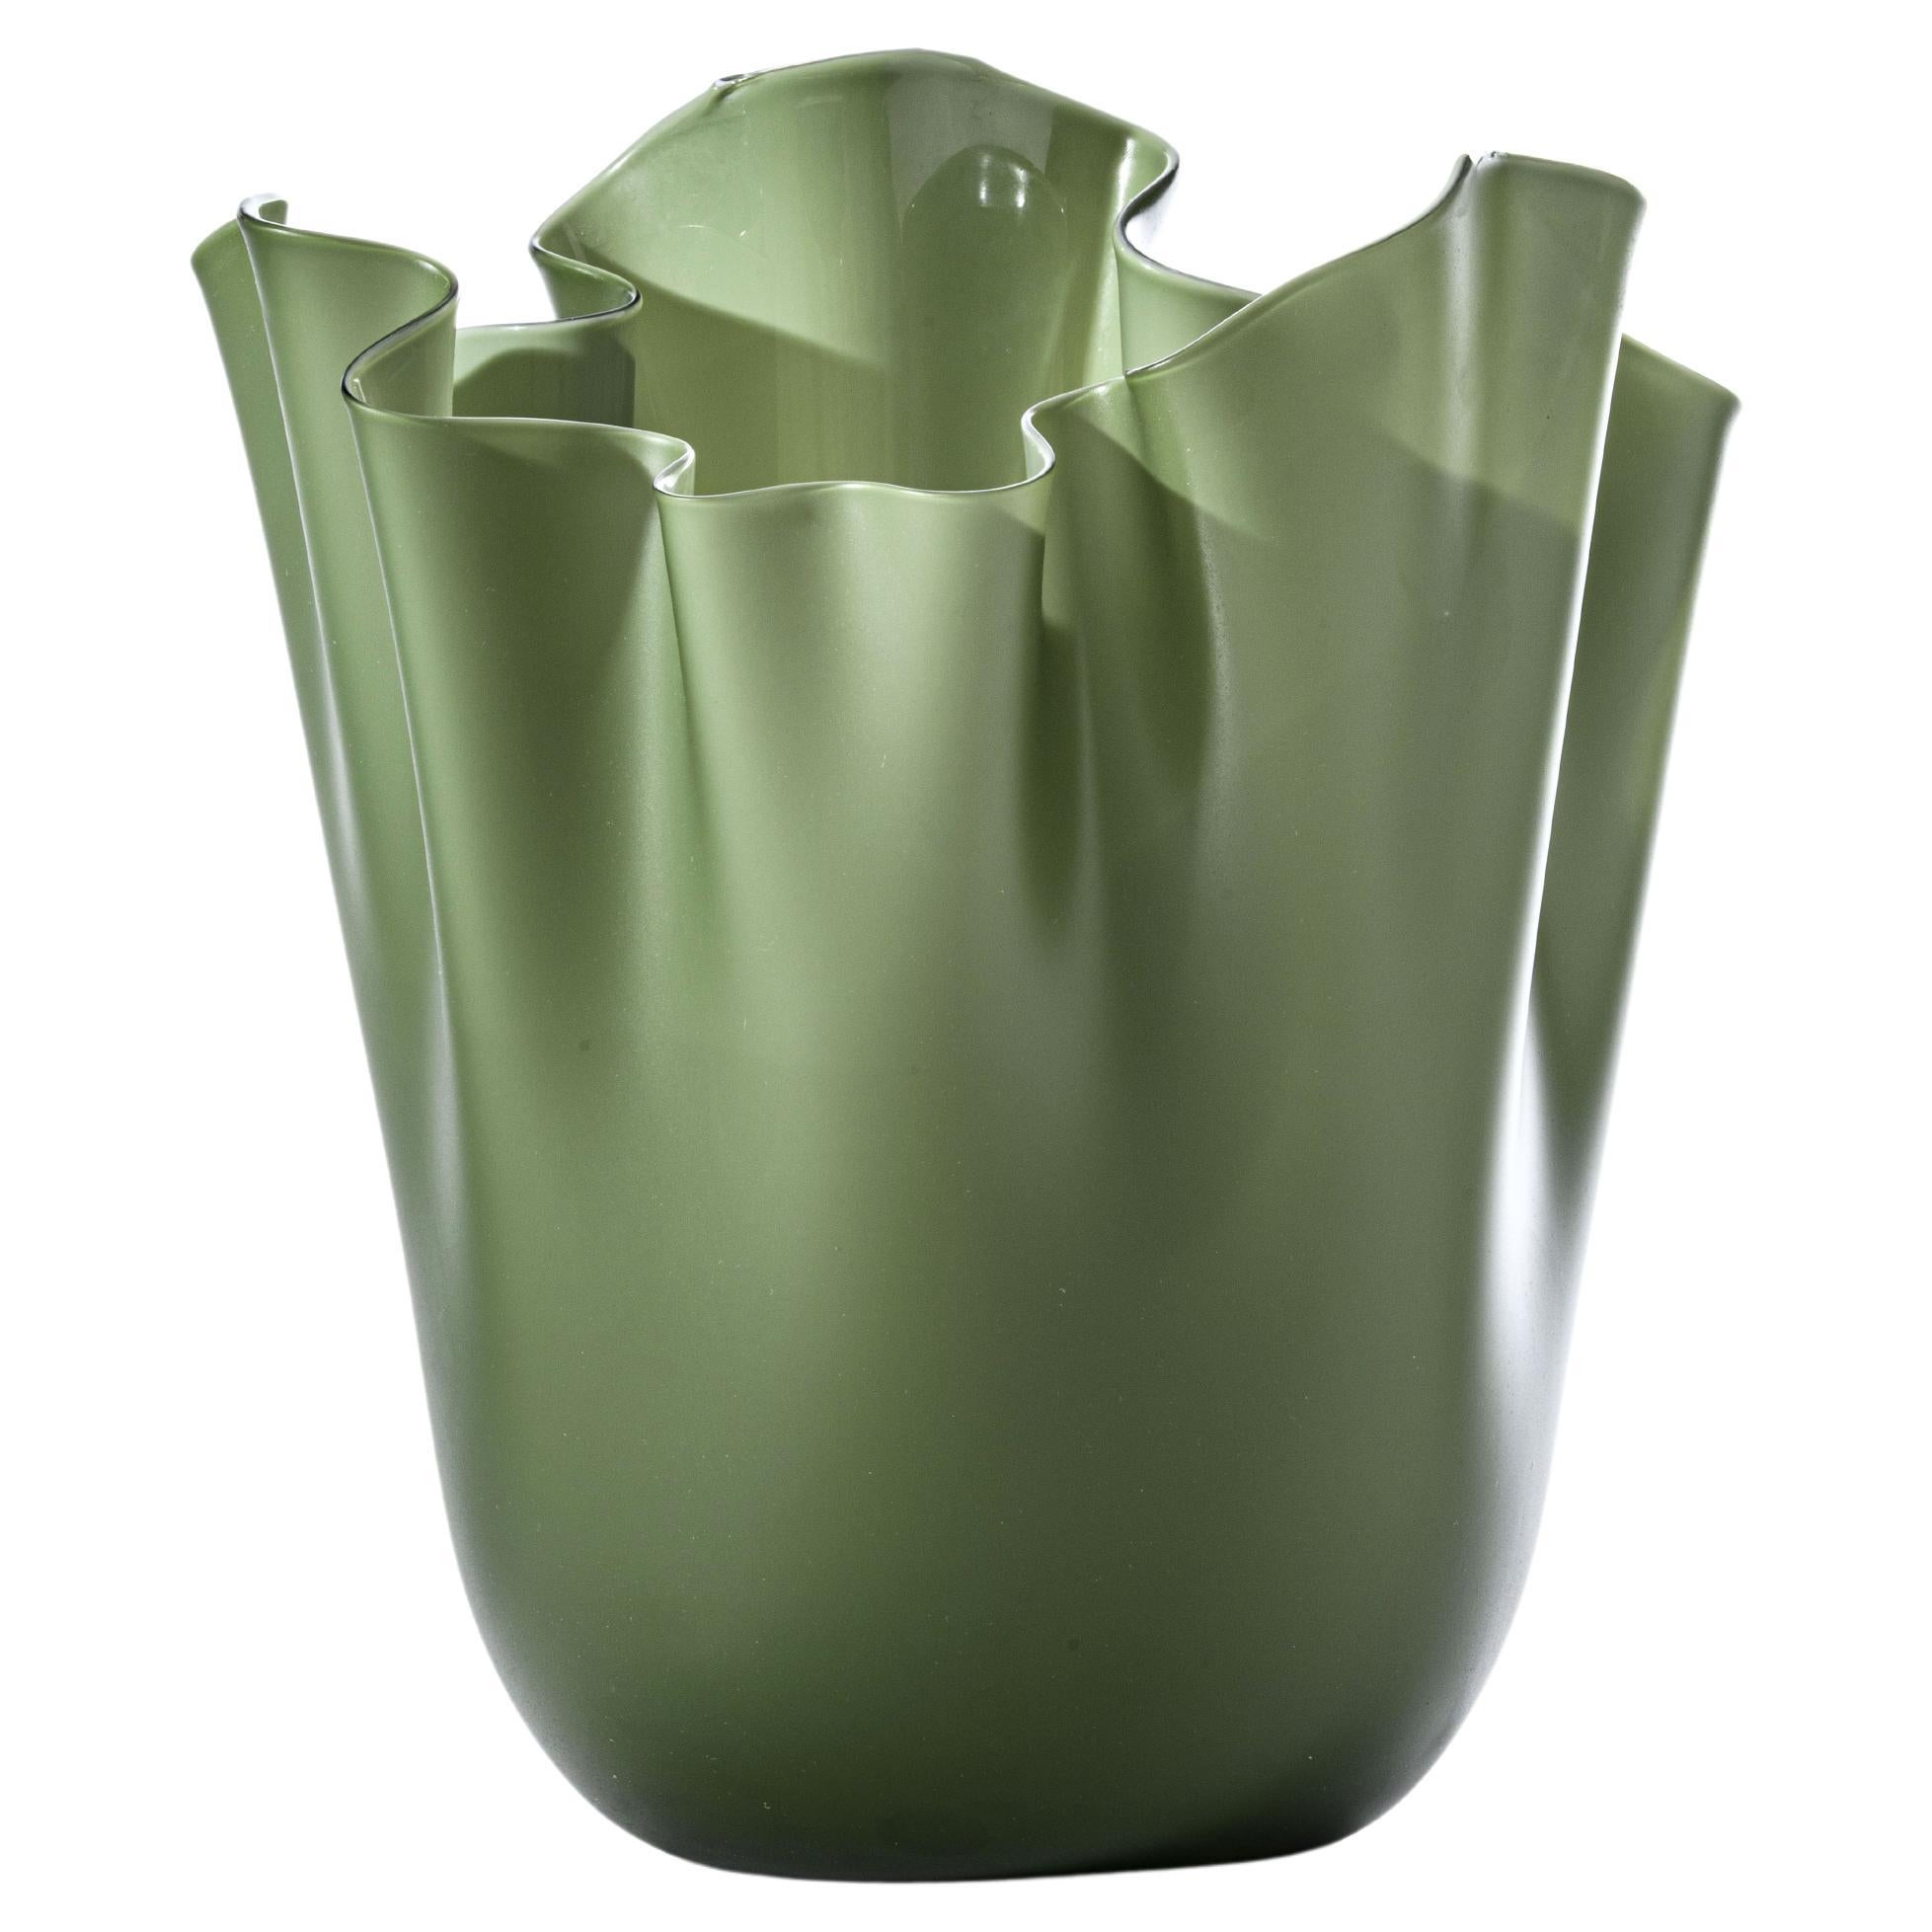 Fazzoletto Sabbiato Large Vase in Apple Green by Fulvio Bianconi and Venini For Sale